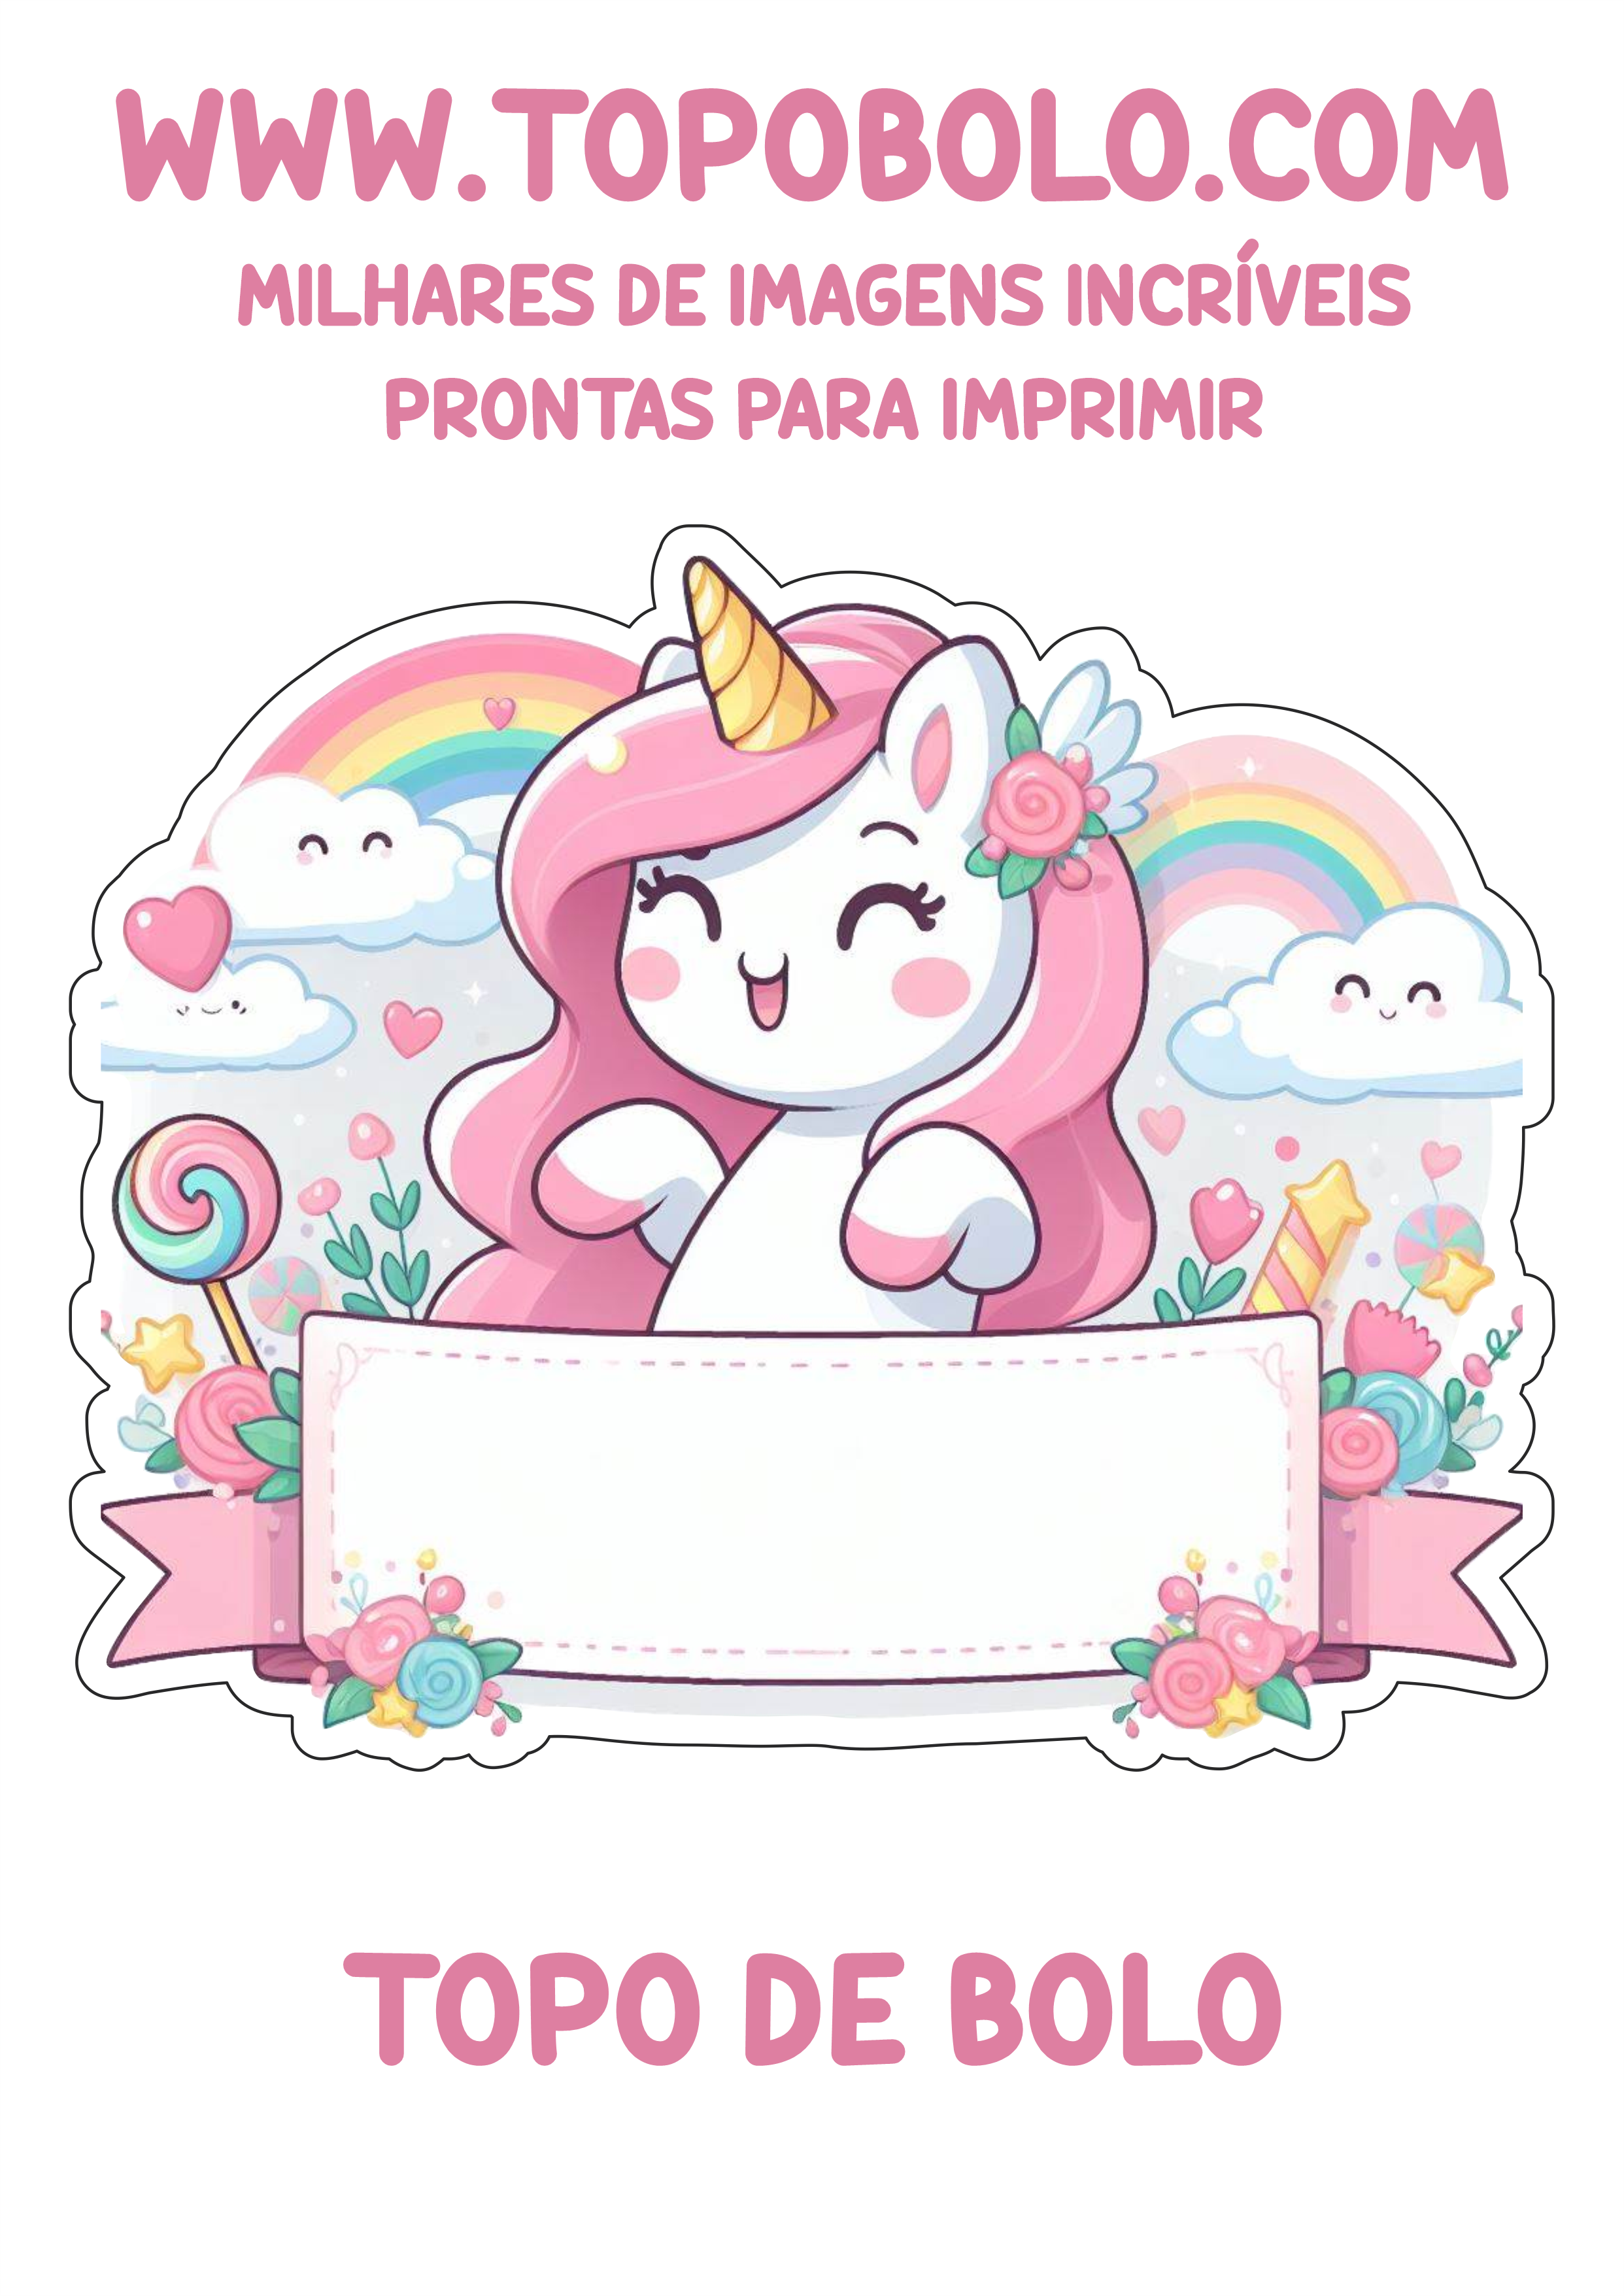 Topo de bolo grátis unicórnio rosa decoração de aniversário para imprimir hora da festa renda extra com personalizados png